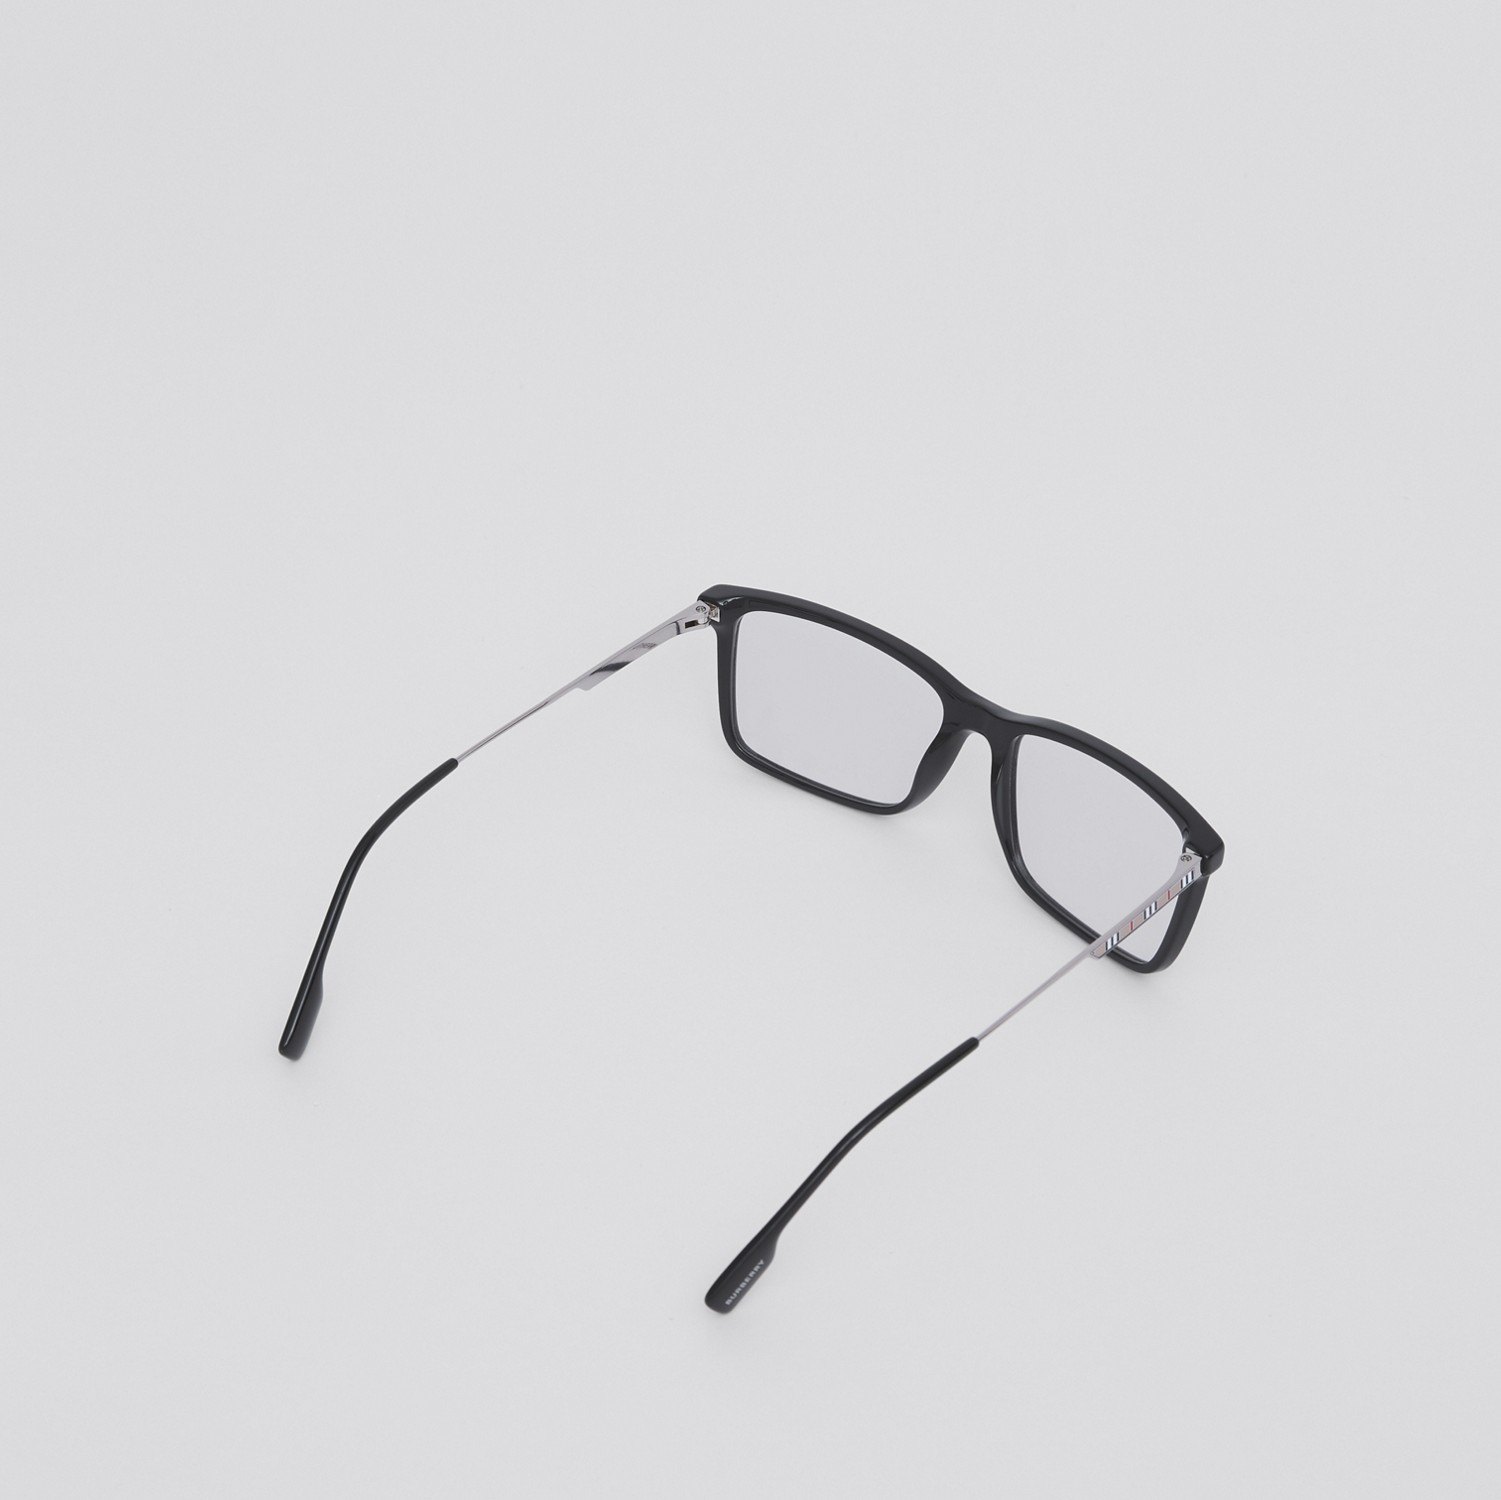 Rechteckige Korrekturbrille mit Streifendetails